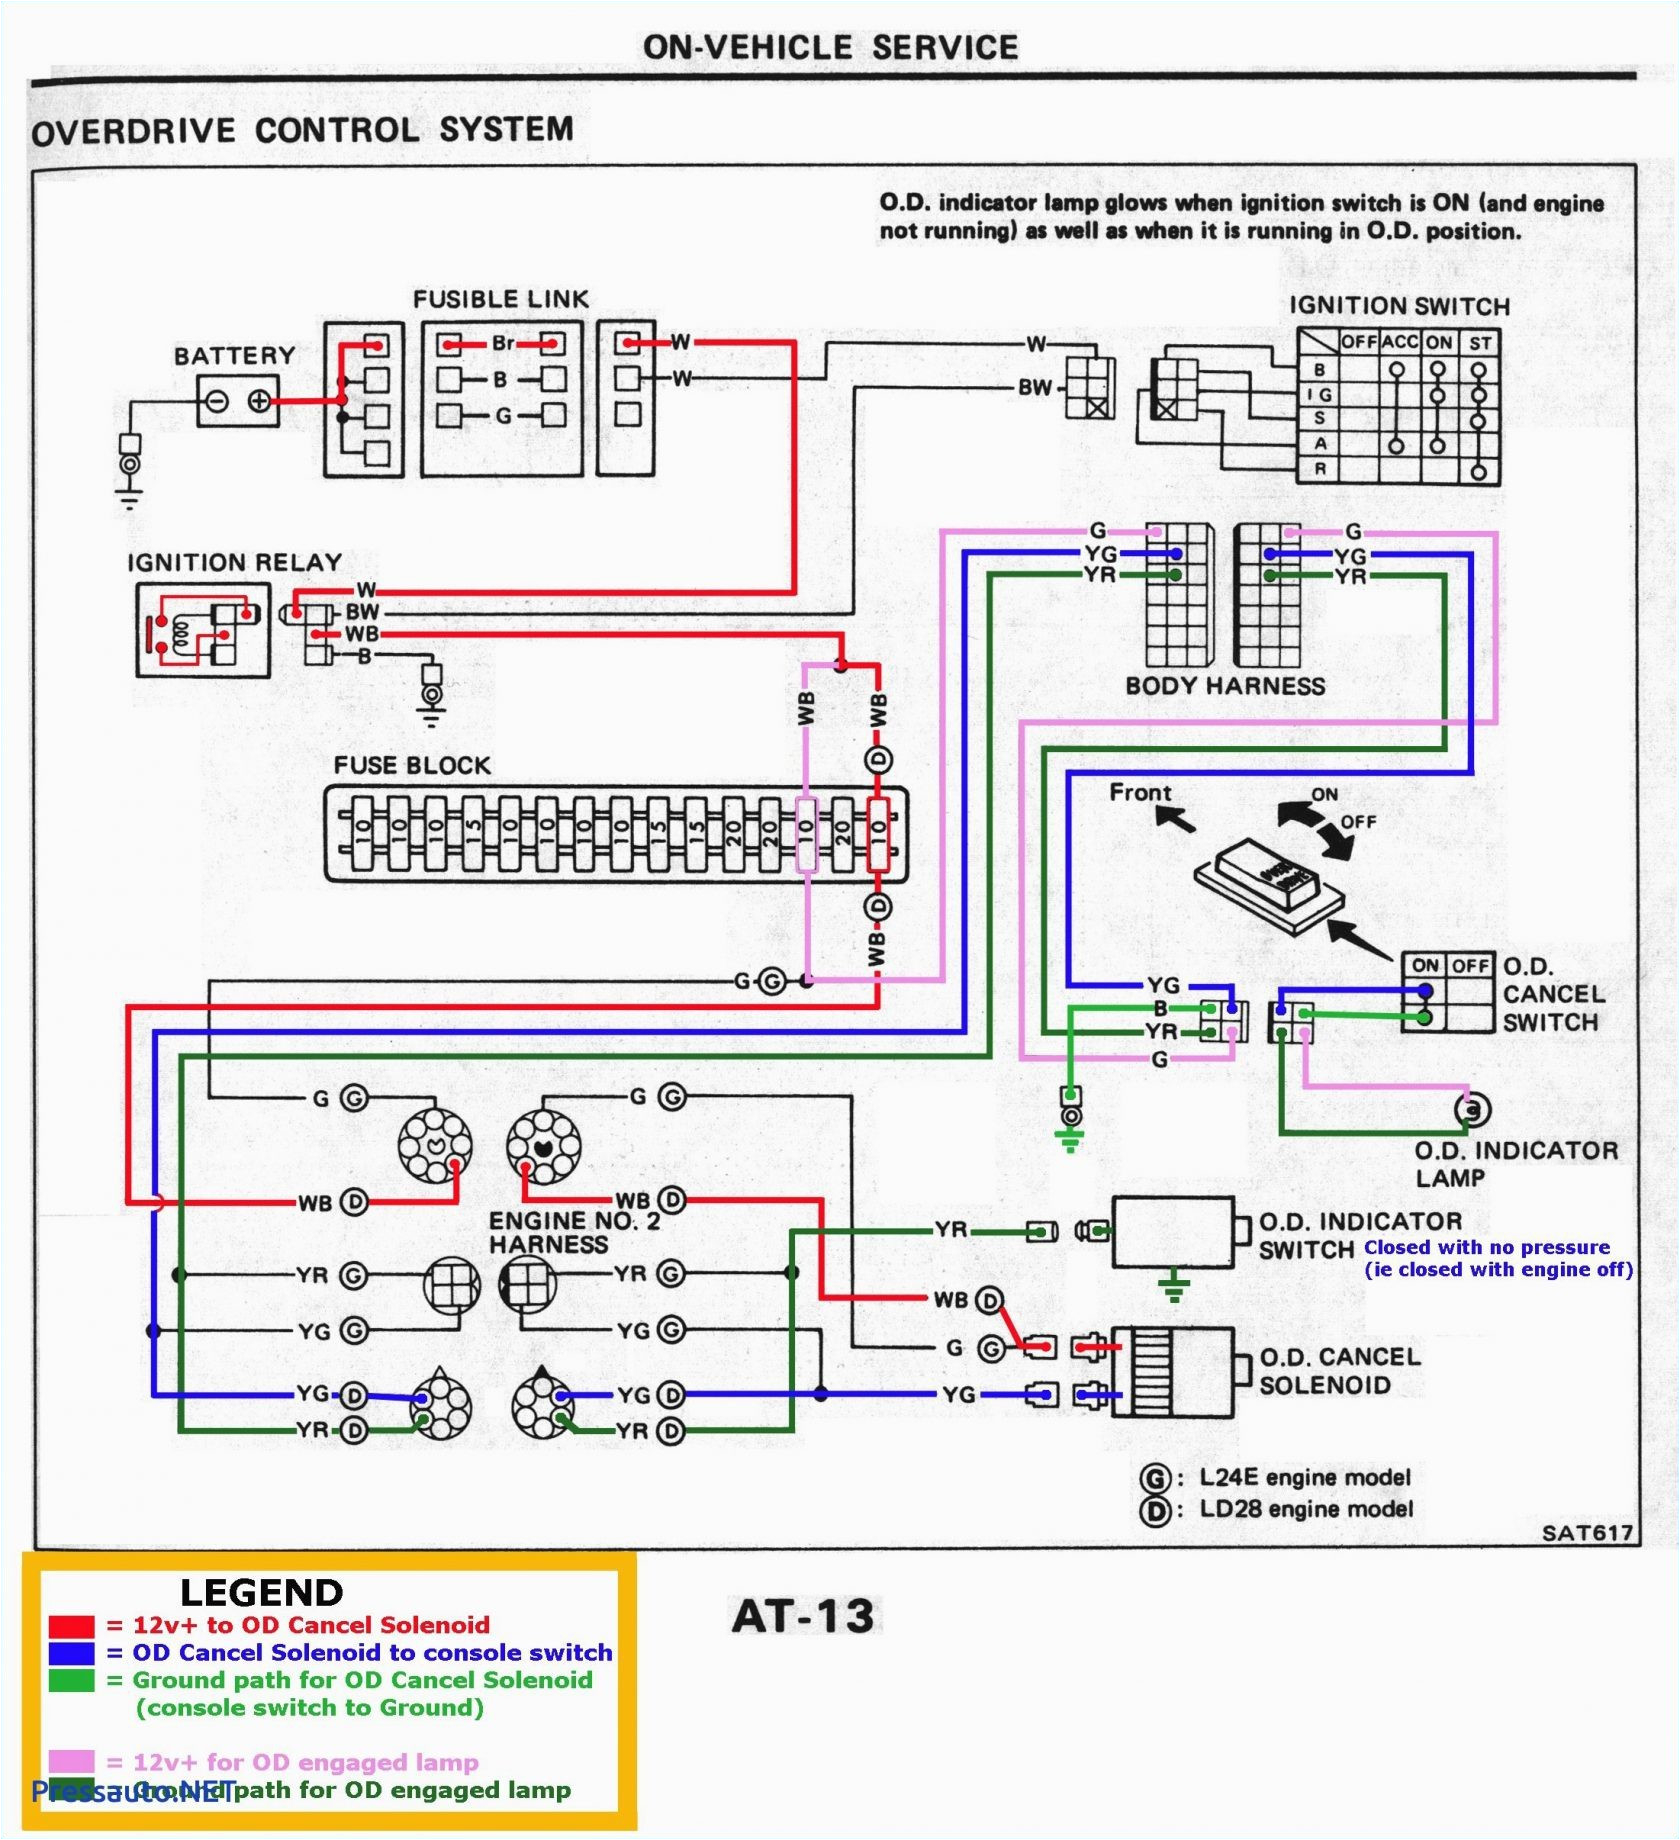 alternating relay wiring diagram blog wiring diagram ssac alternating relay wiring diagram wiring diagram operations alternating